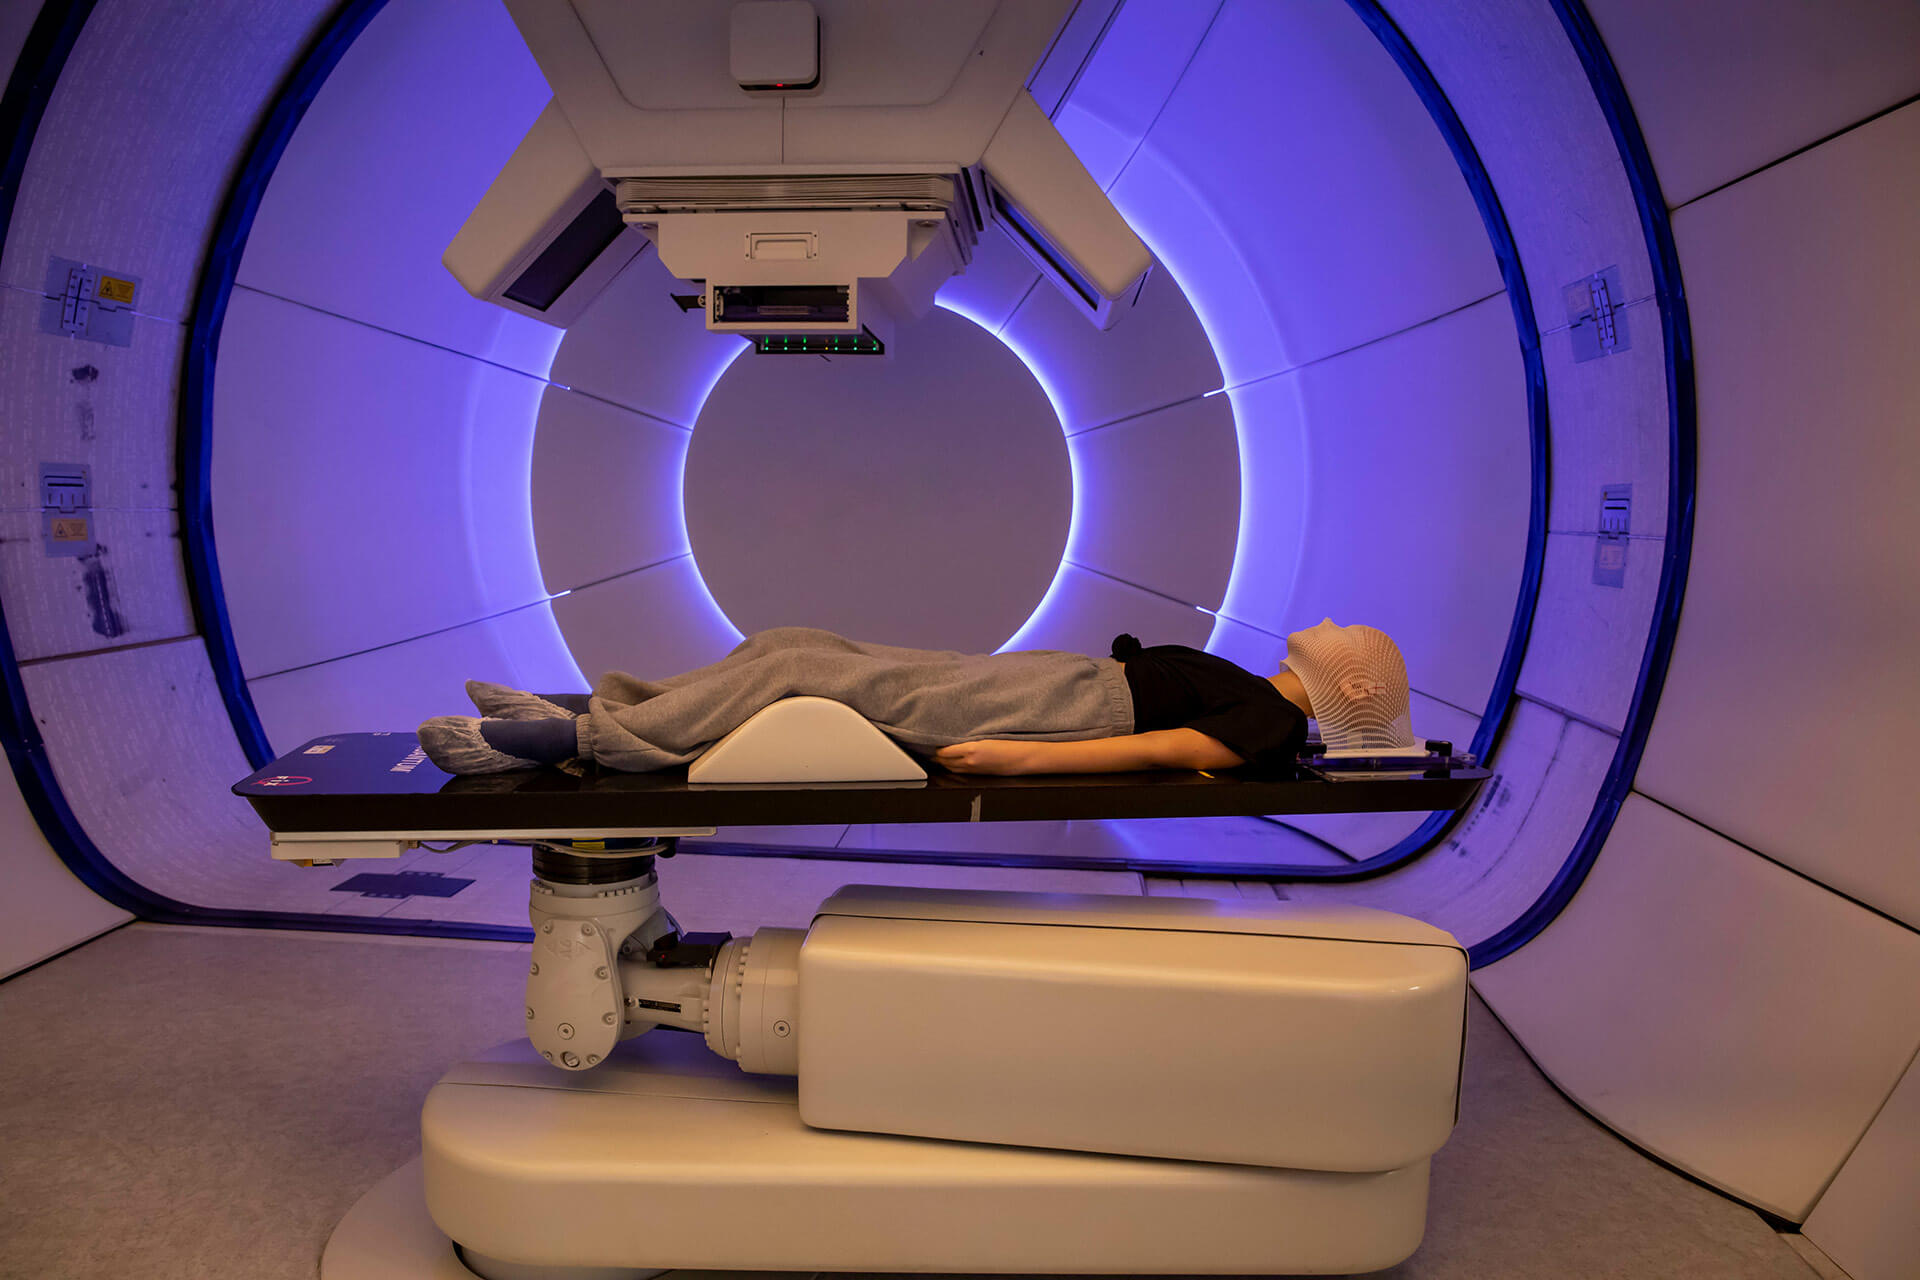 La protonterapia puede reducir el riesgo de desarrollar segundos tumores relacionados con la radiación en comparación con la radioterapia convencional